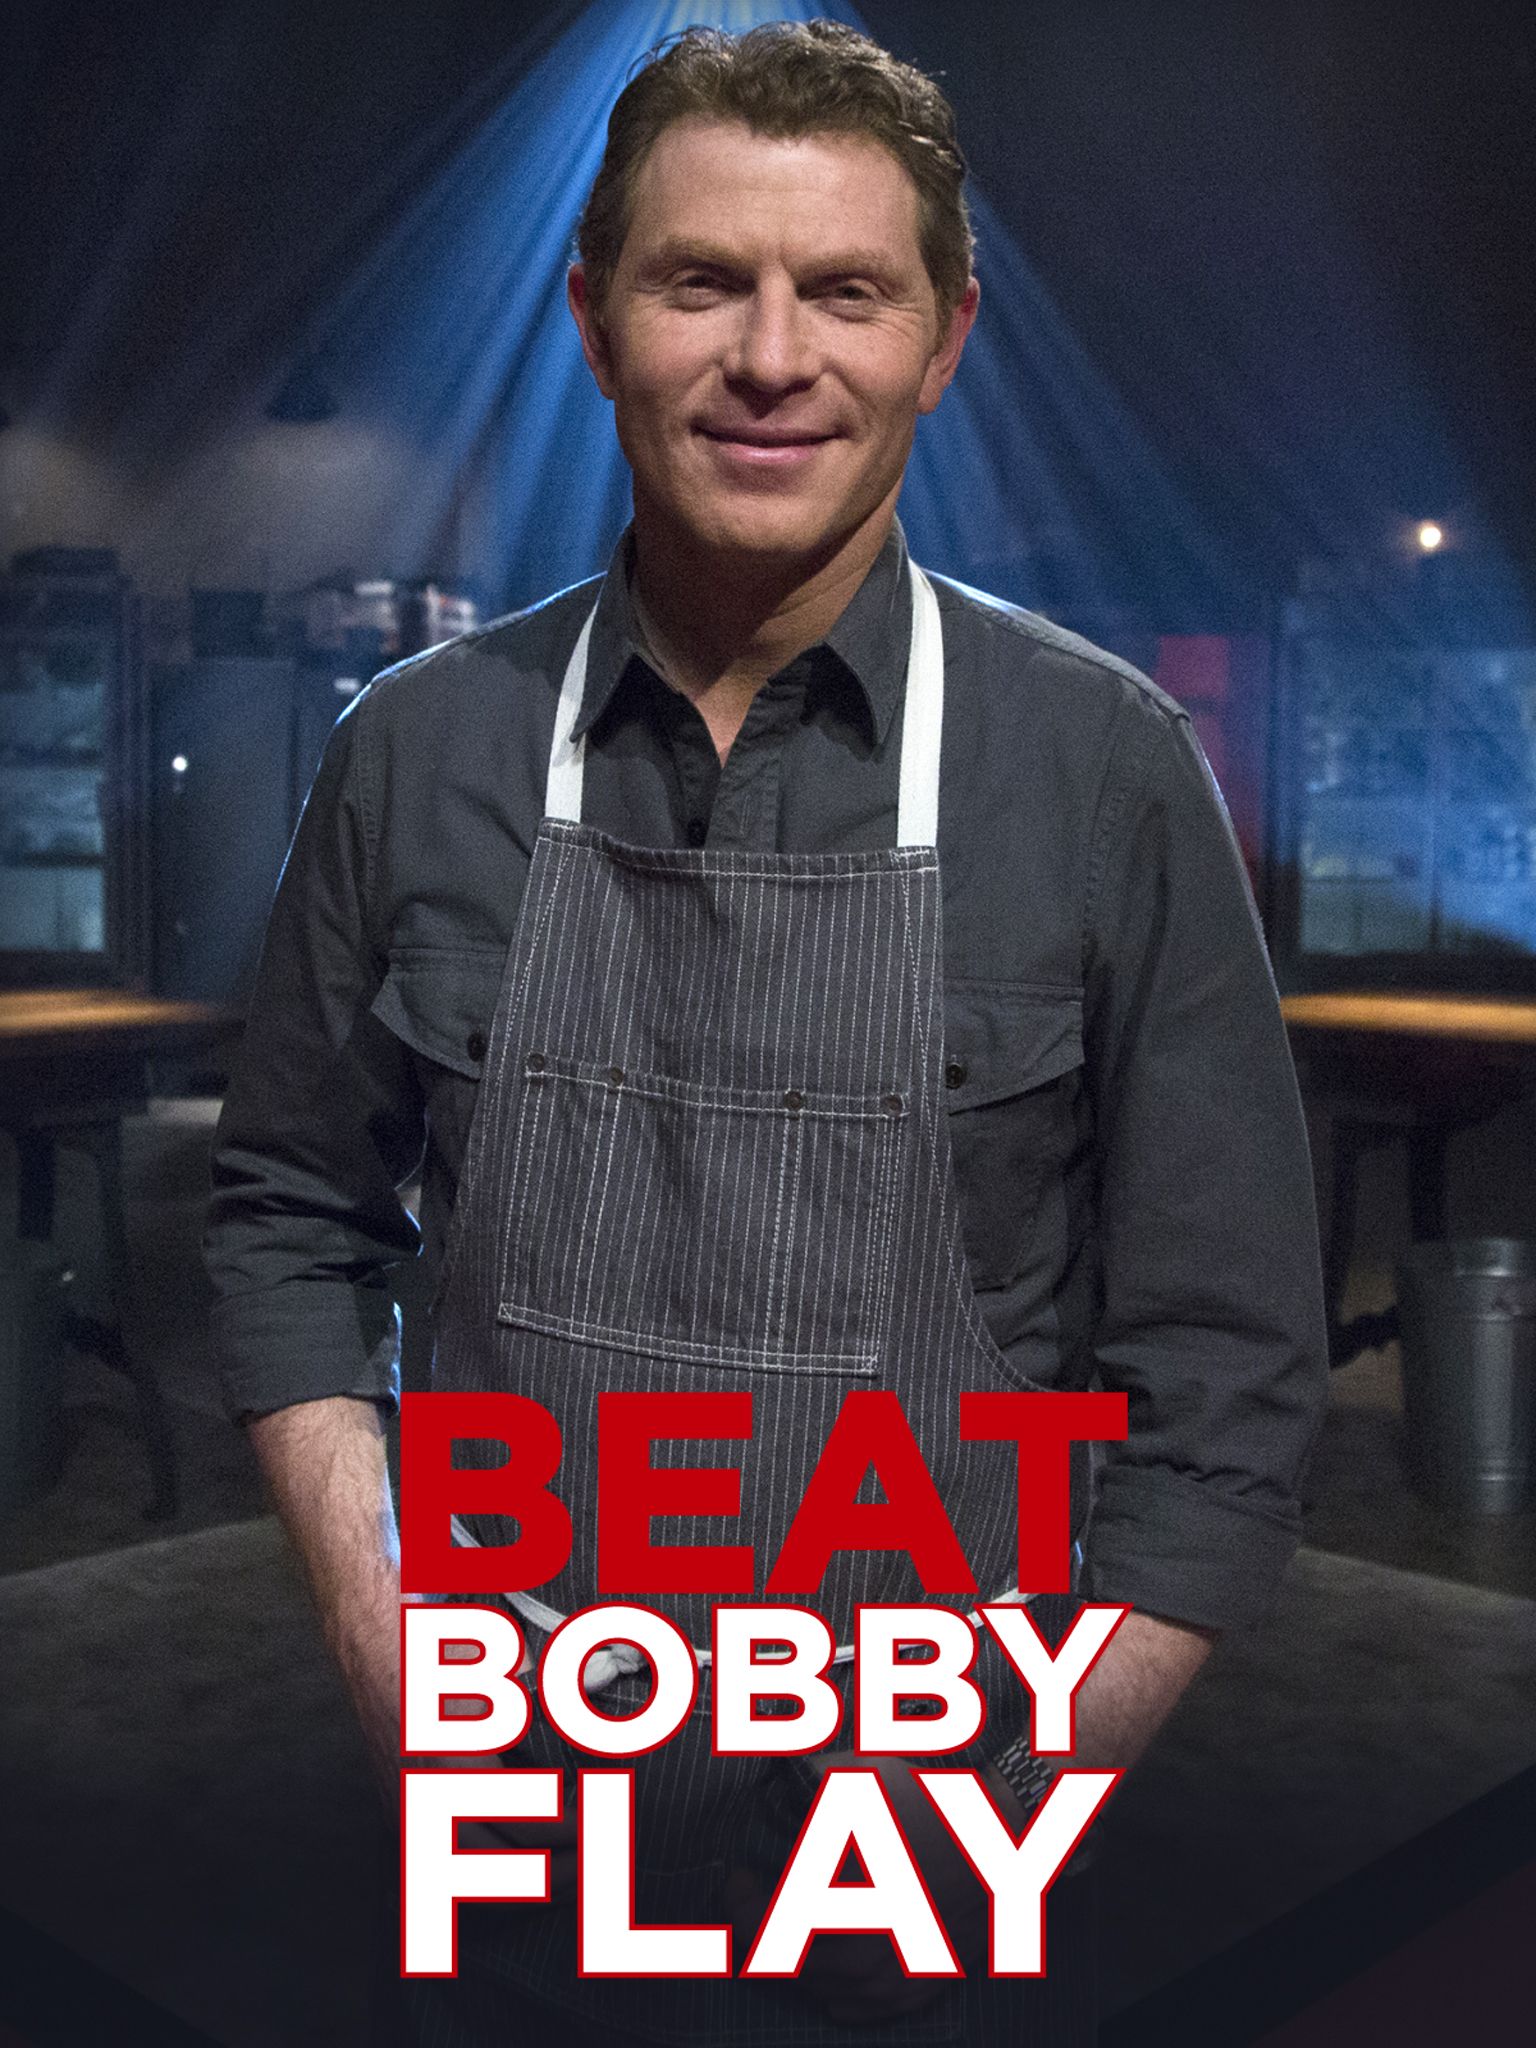 Beat Bobby Flay - Season 19